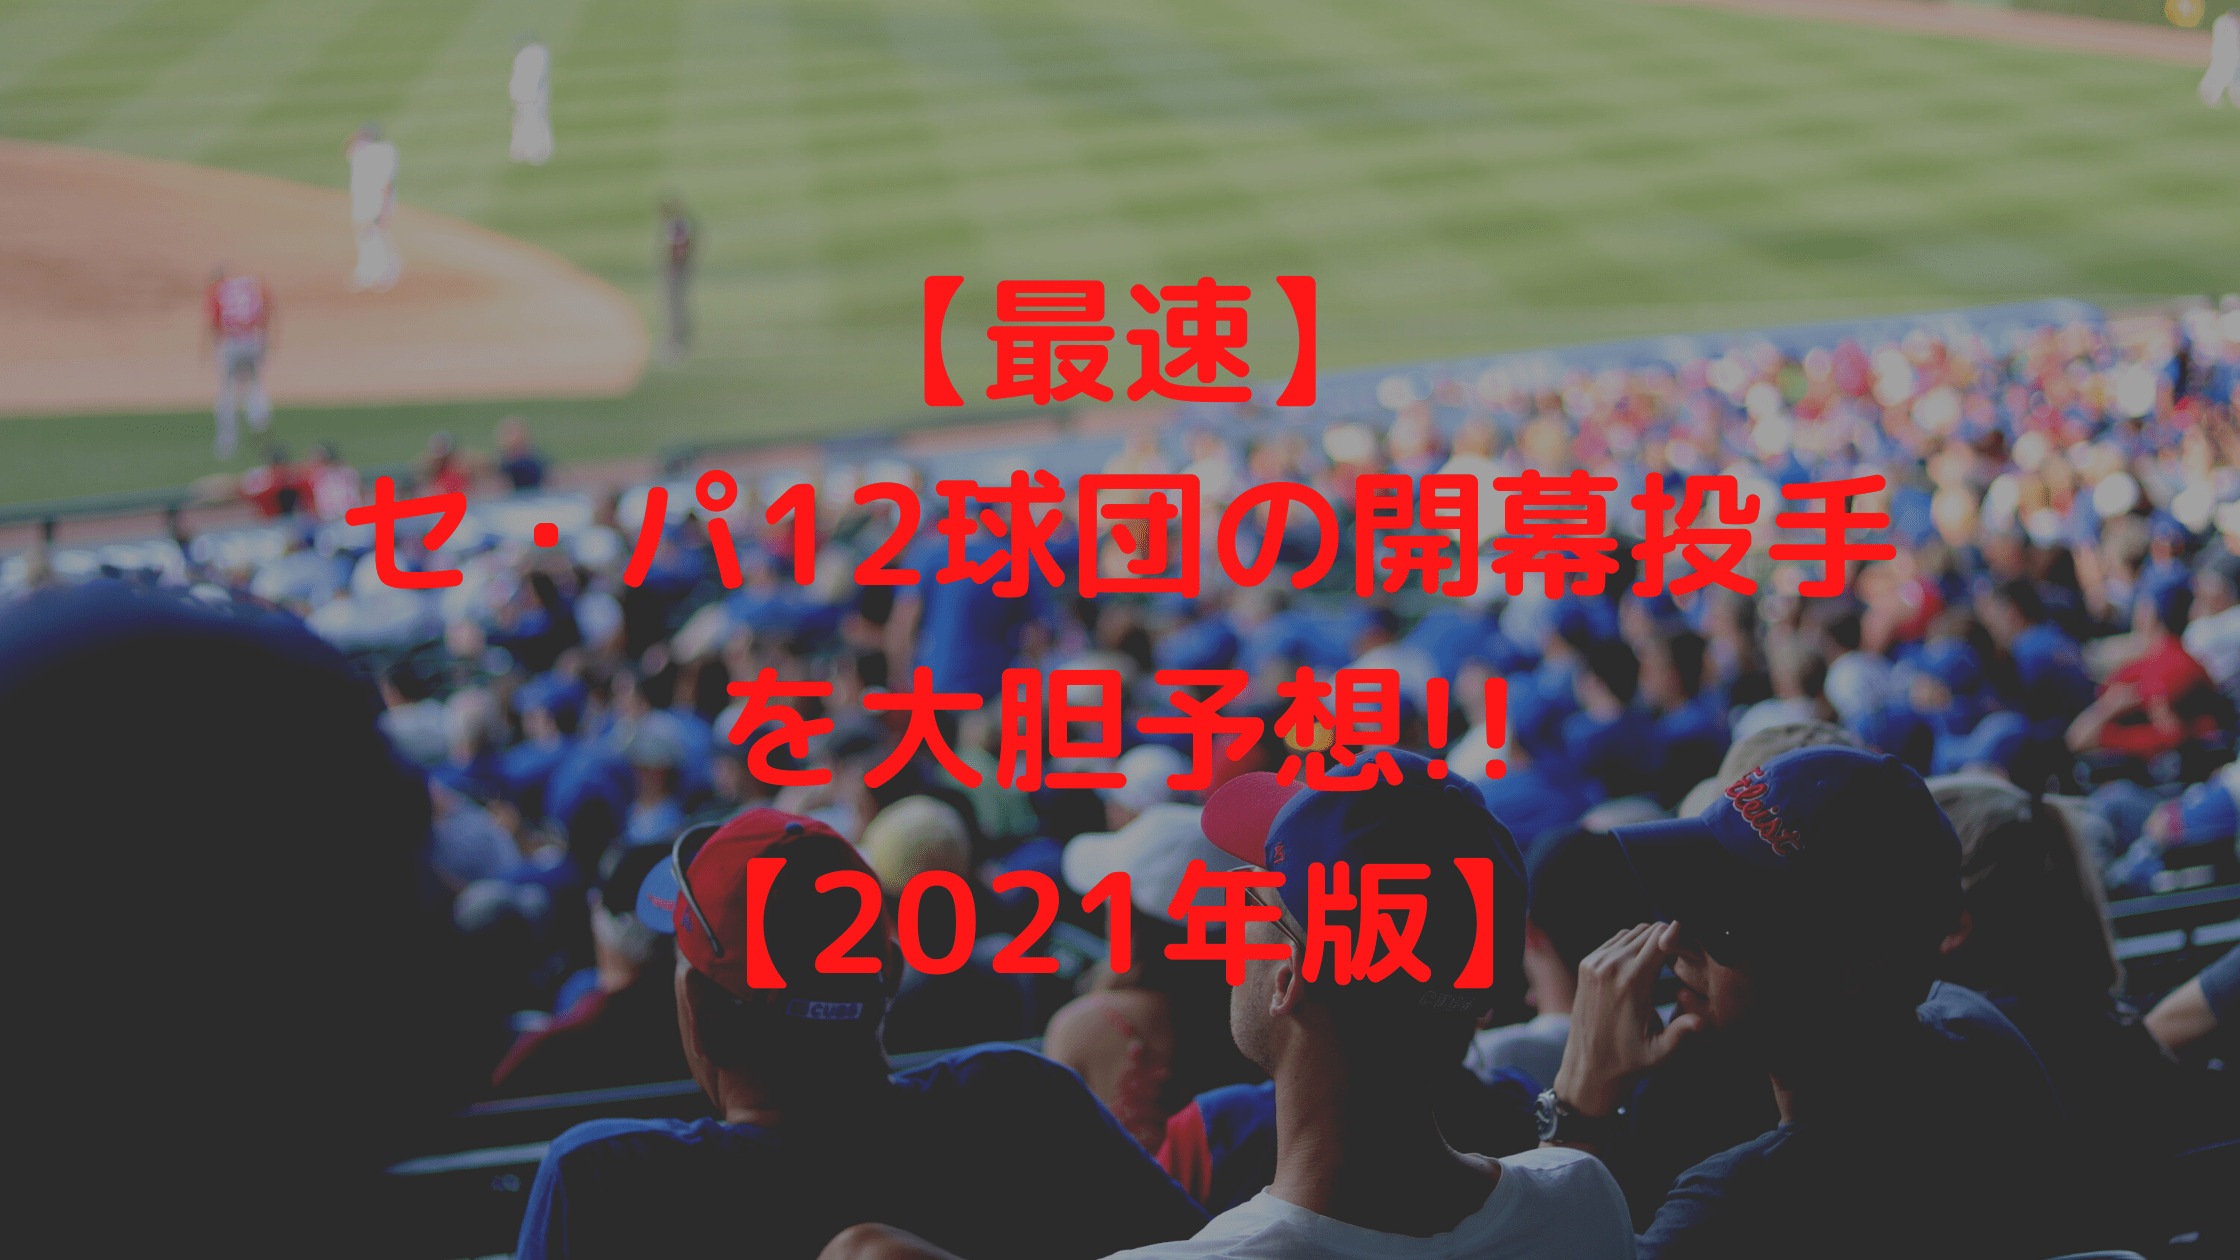 【最速】セ・パ12球団の開幕投手を大胆予想!!【2021年版】